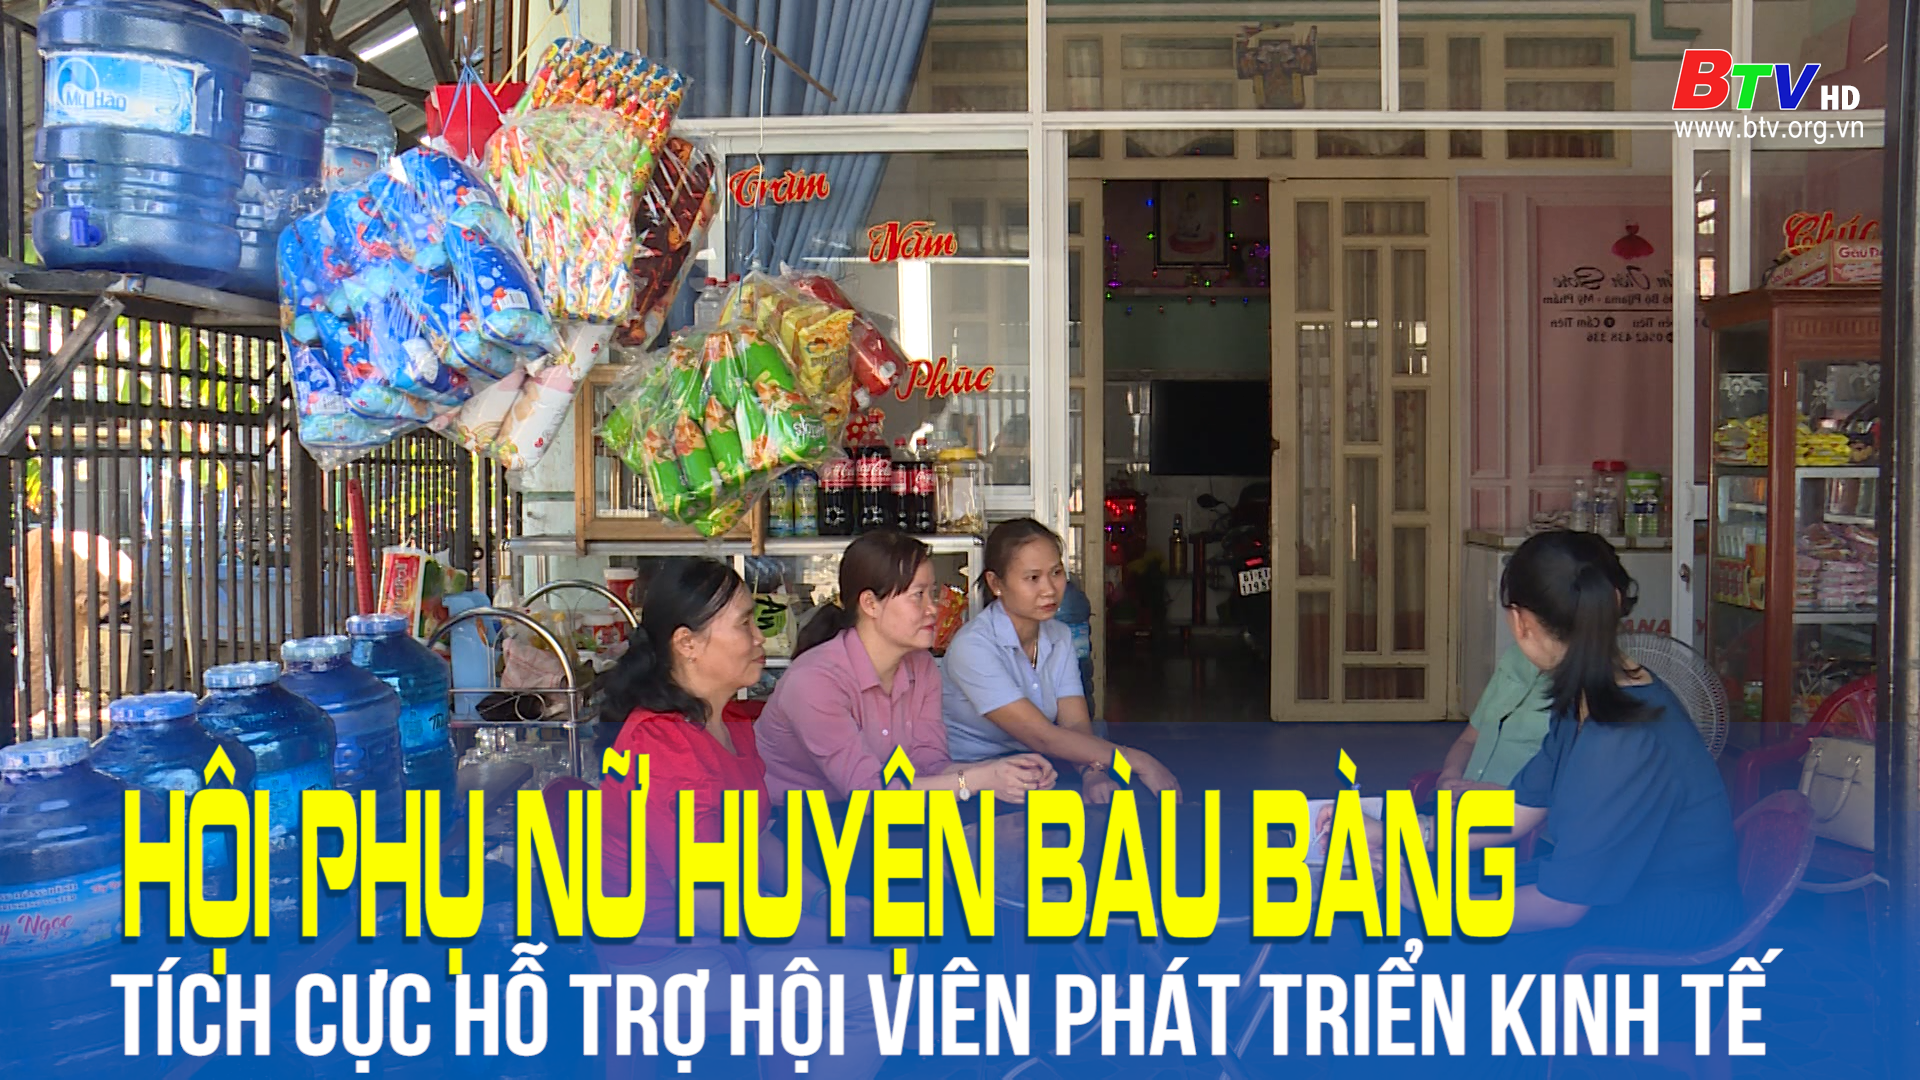 Hội phụ nữ huyện Bàu Bàng tích cực hỗ trợ hội viên phát triển kinh tế gia đình